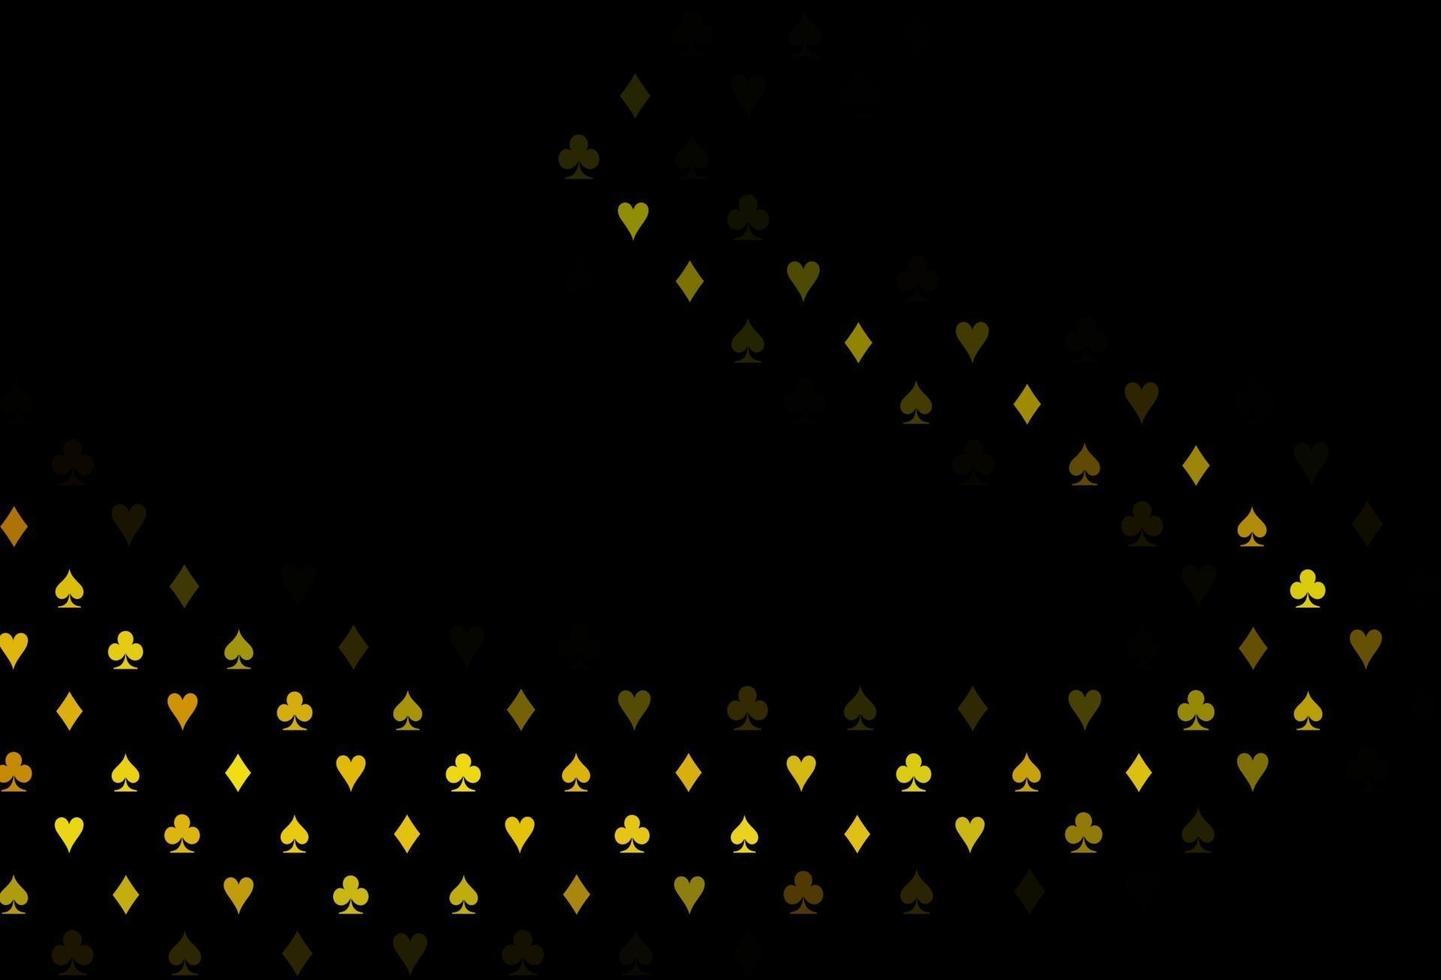 plantilla de vector de color amarillo oscuro, naranja con símbolos de póquer.